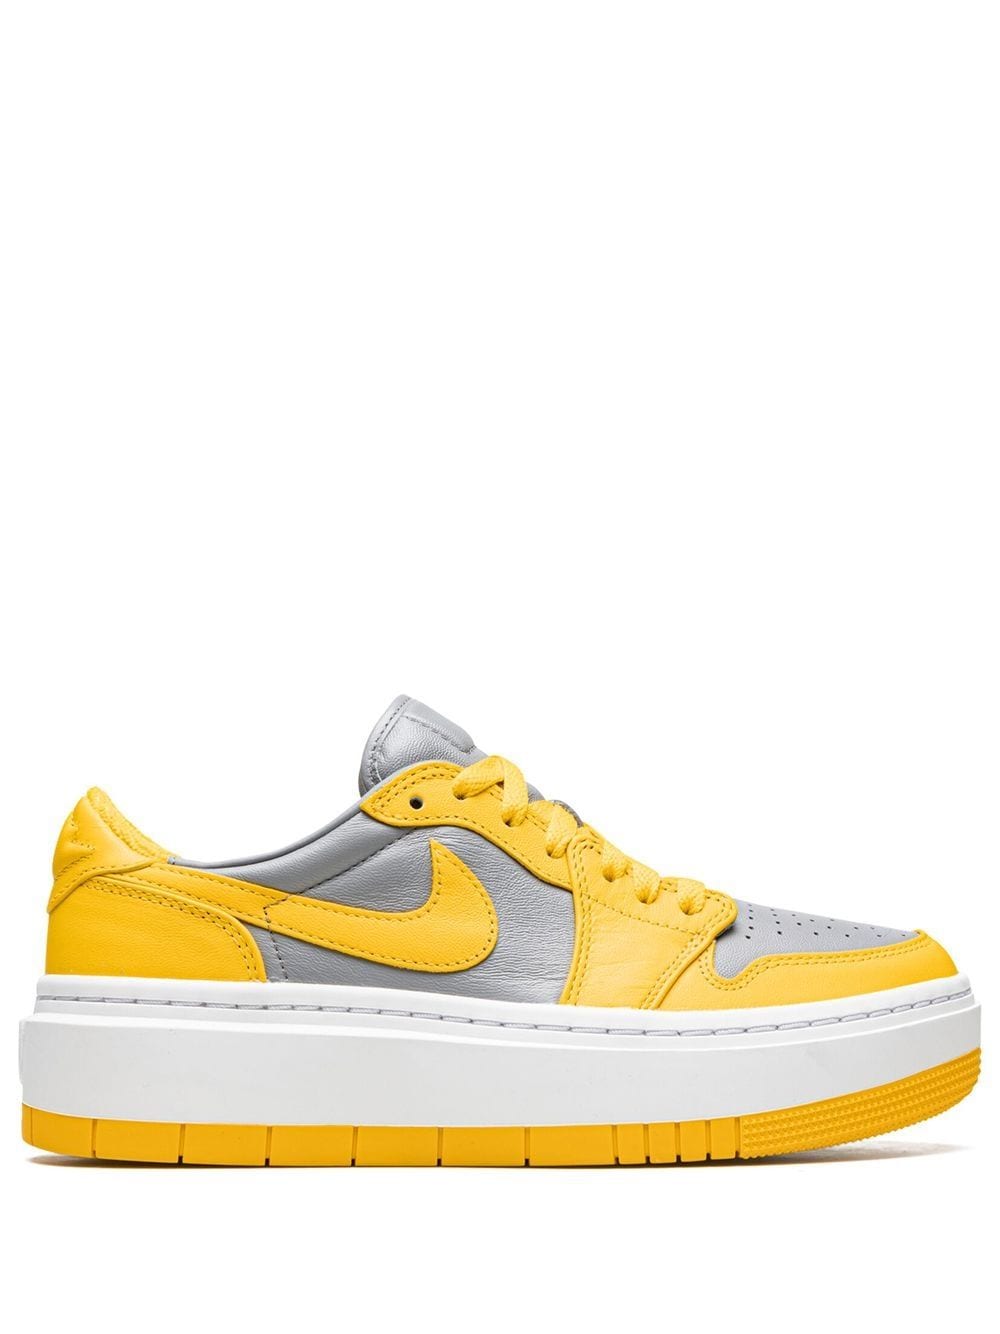 Jordan Air Jordan 1 Low sneakers - Yellow